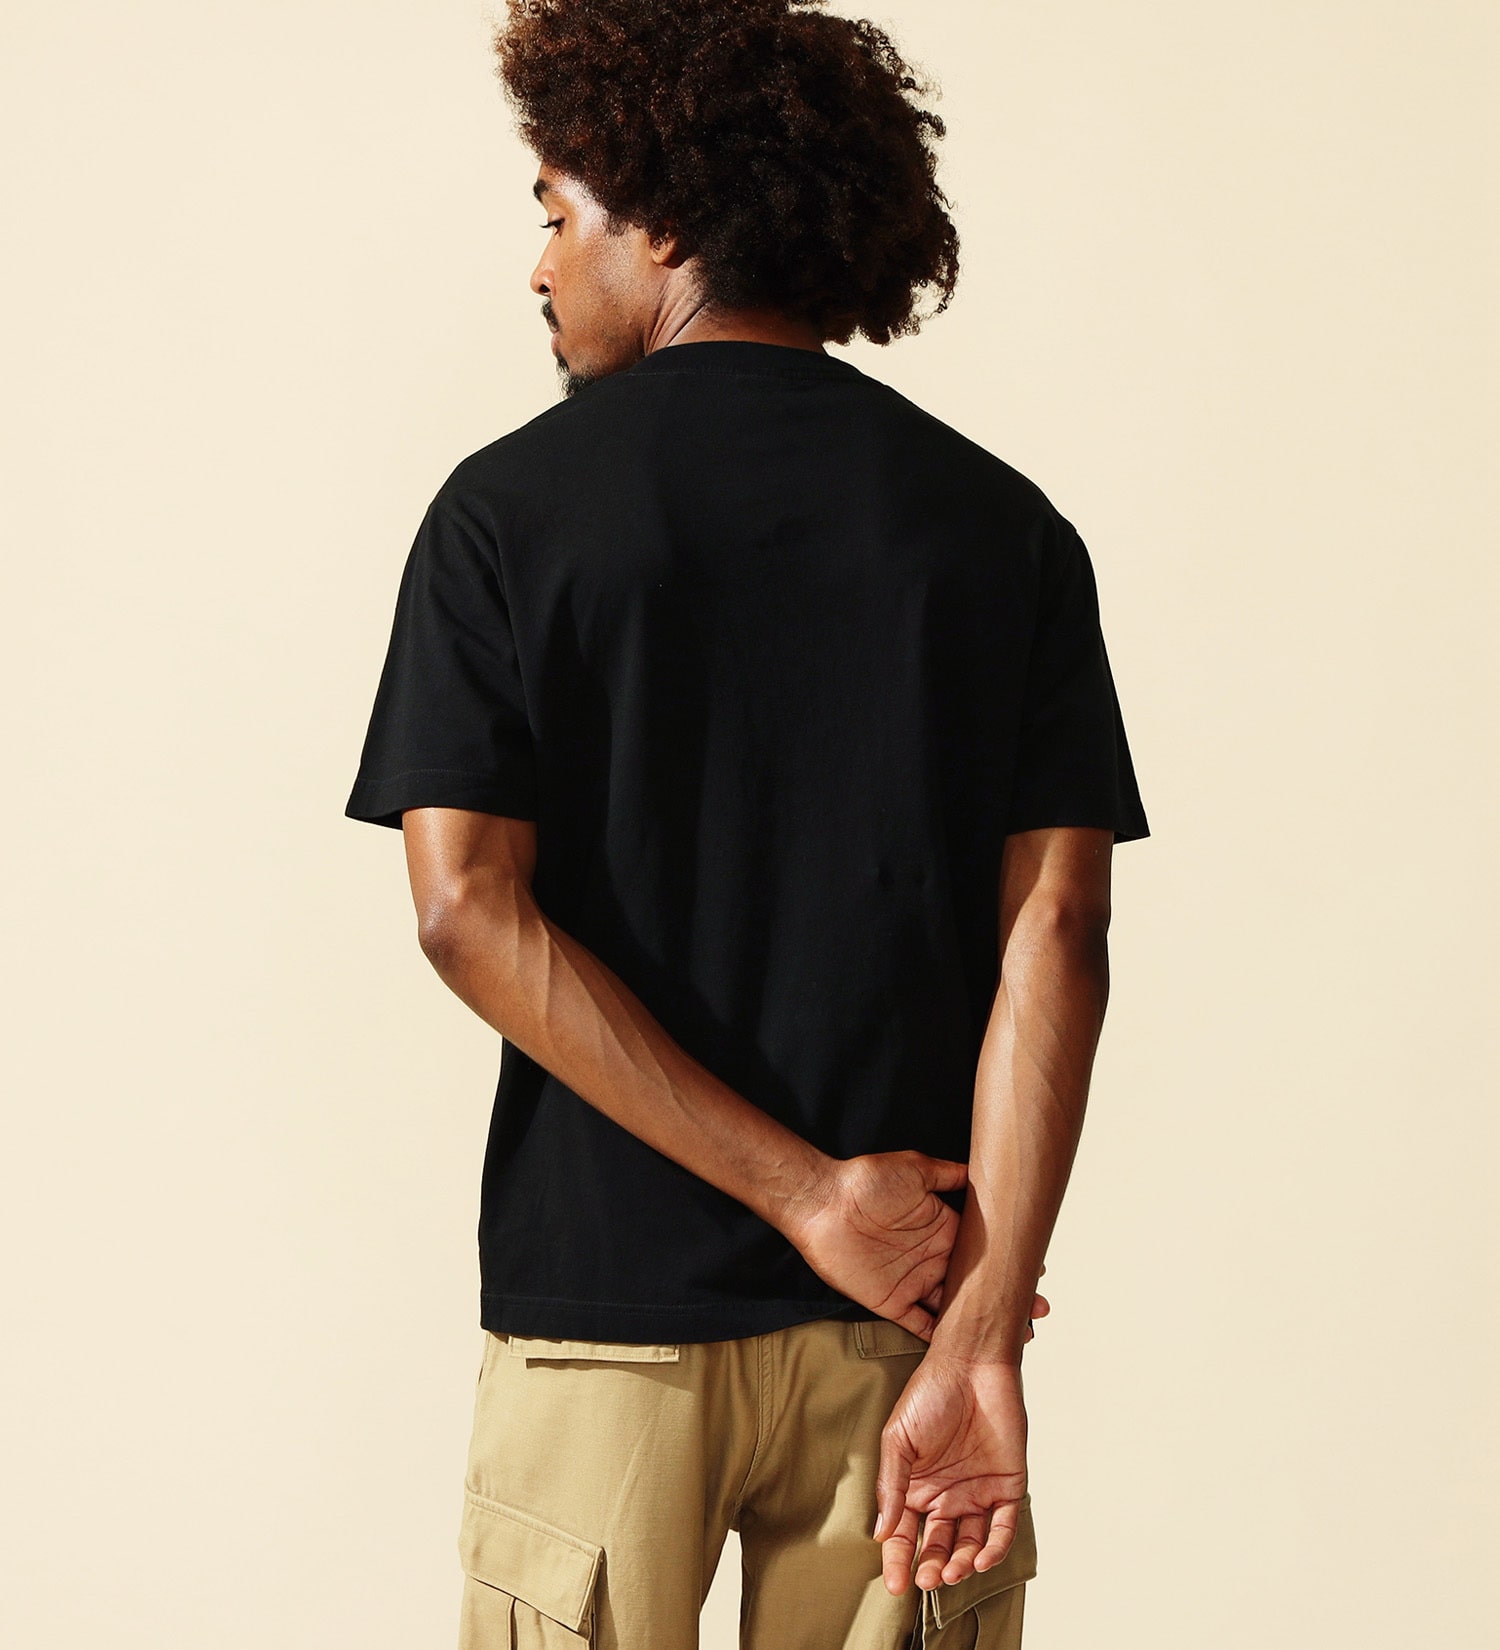 ALPHA(アルファ)の【ポイントアップ対象】AマークロゴプリントTシャツ 半袖 (ブラウンフロッグスキンカモ)|トップス/Tシャツ/カットソー/メンズ|ブラック